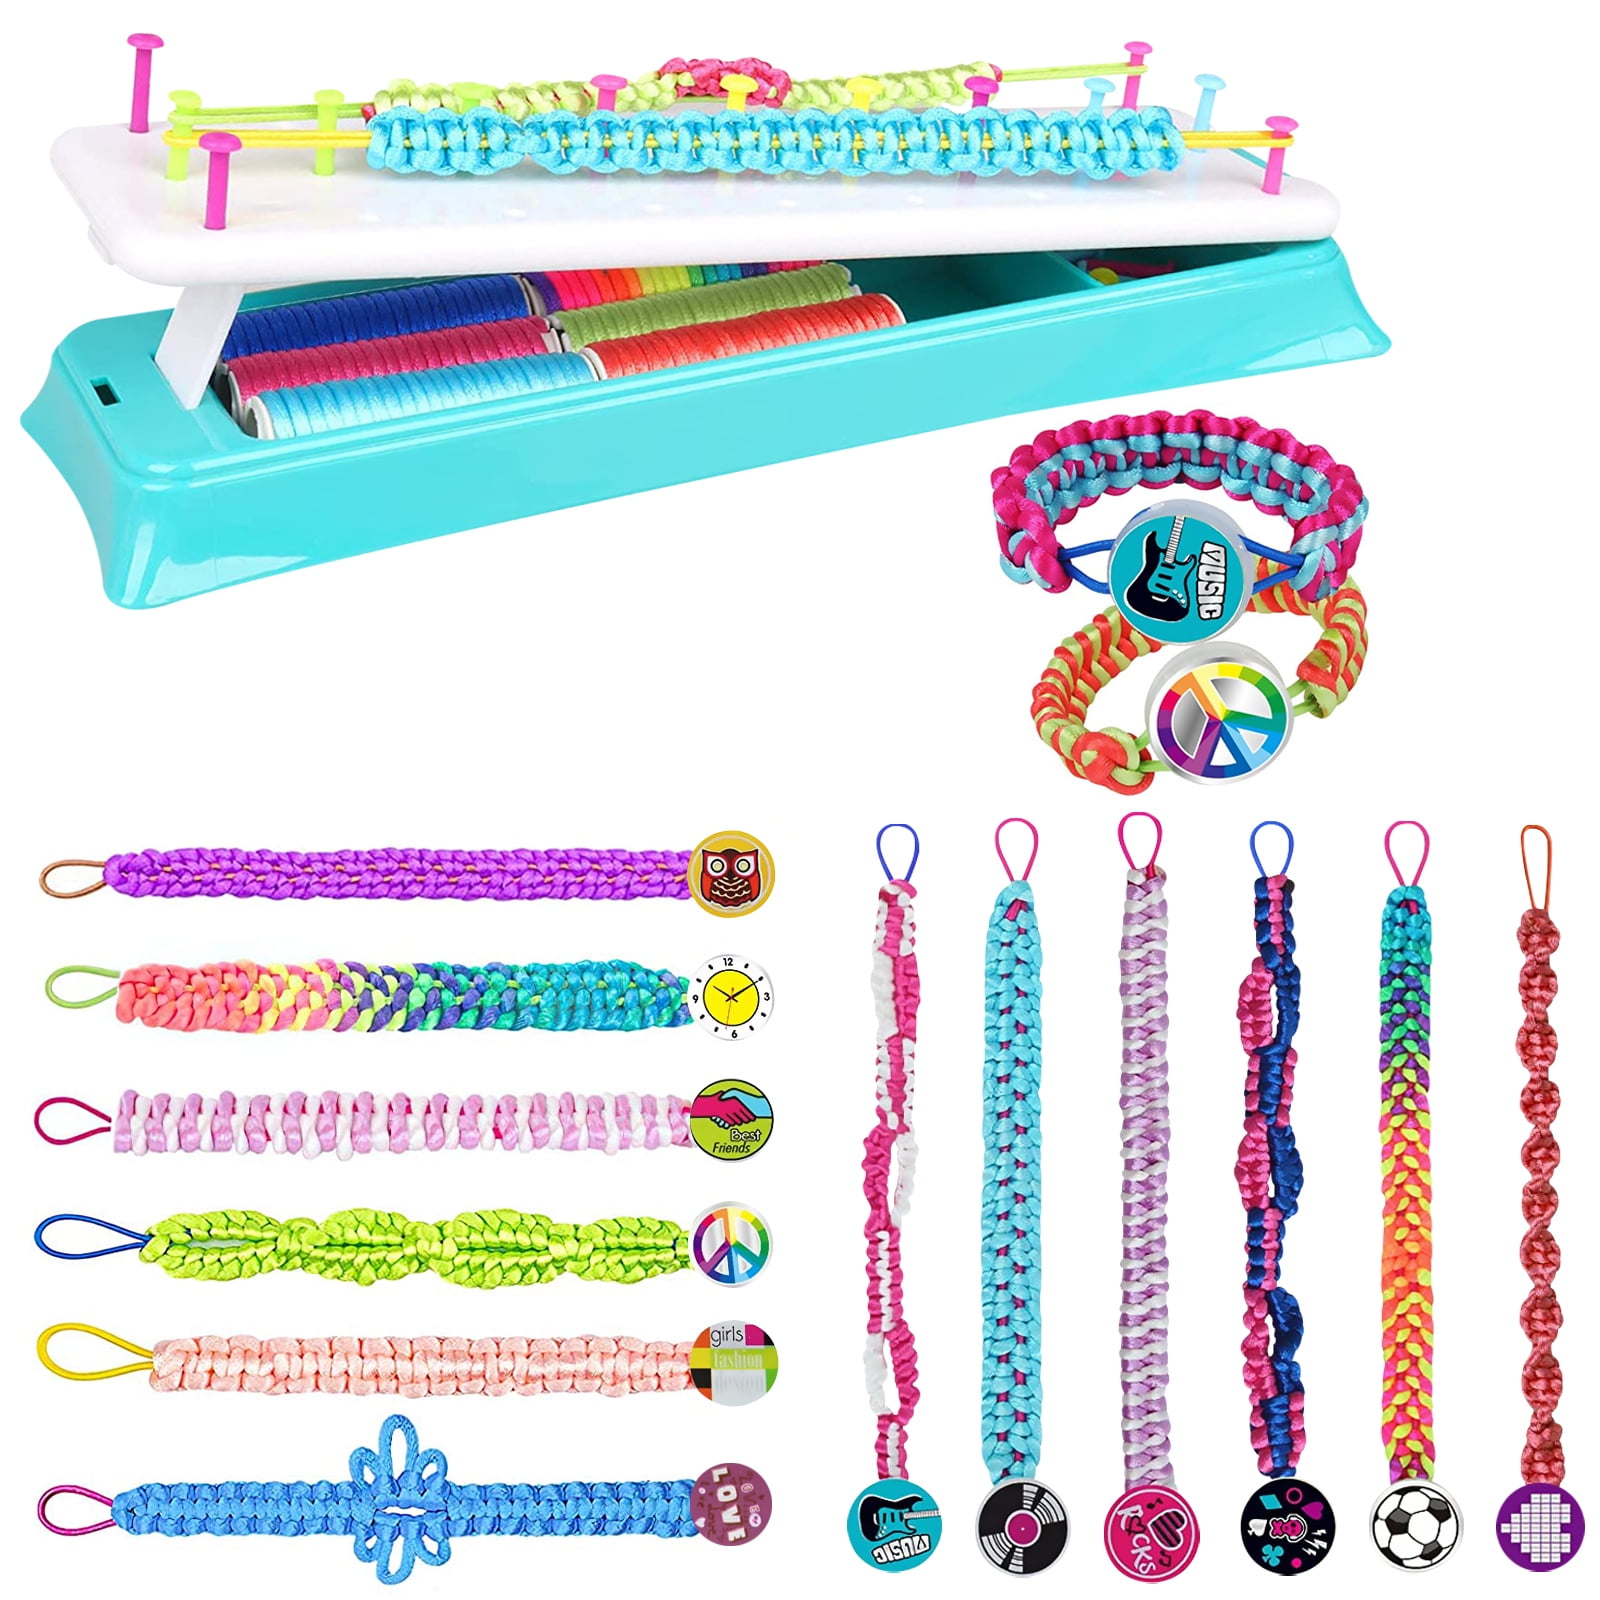 Friendship Bracelet Making Kit for Girls, Crafts for Girl Toys for